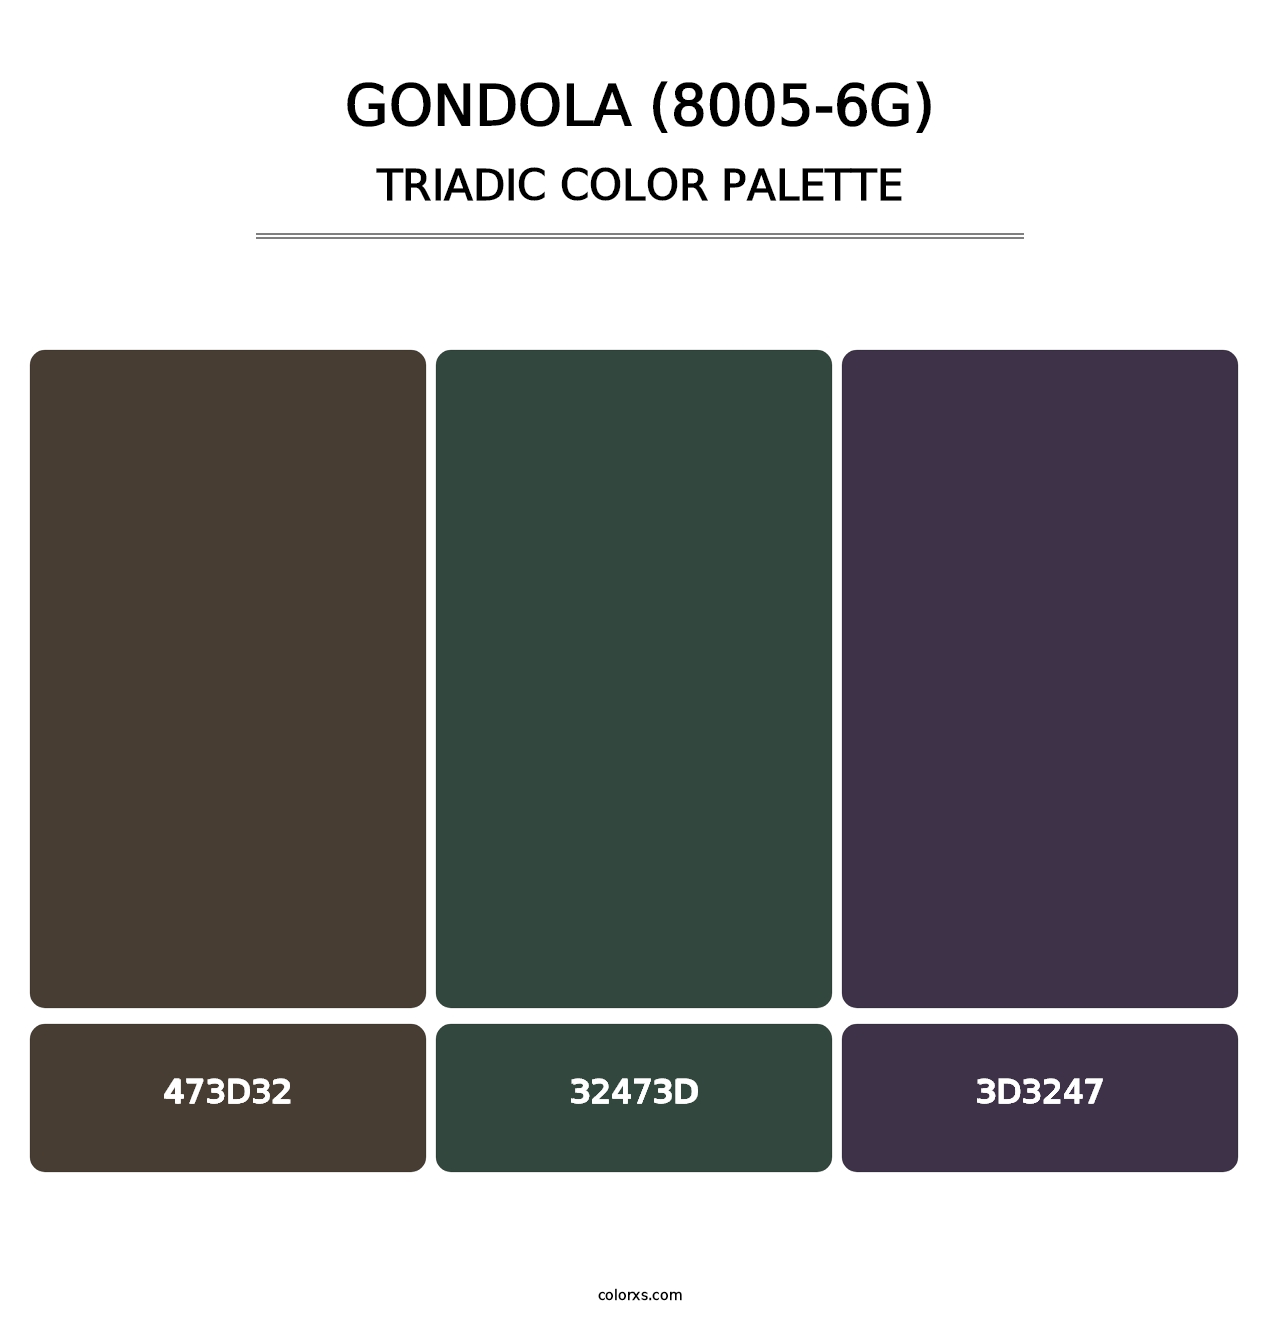 Gondola (8005-6G) - Triadic Color Palette